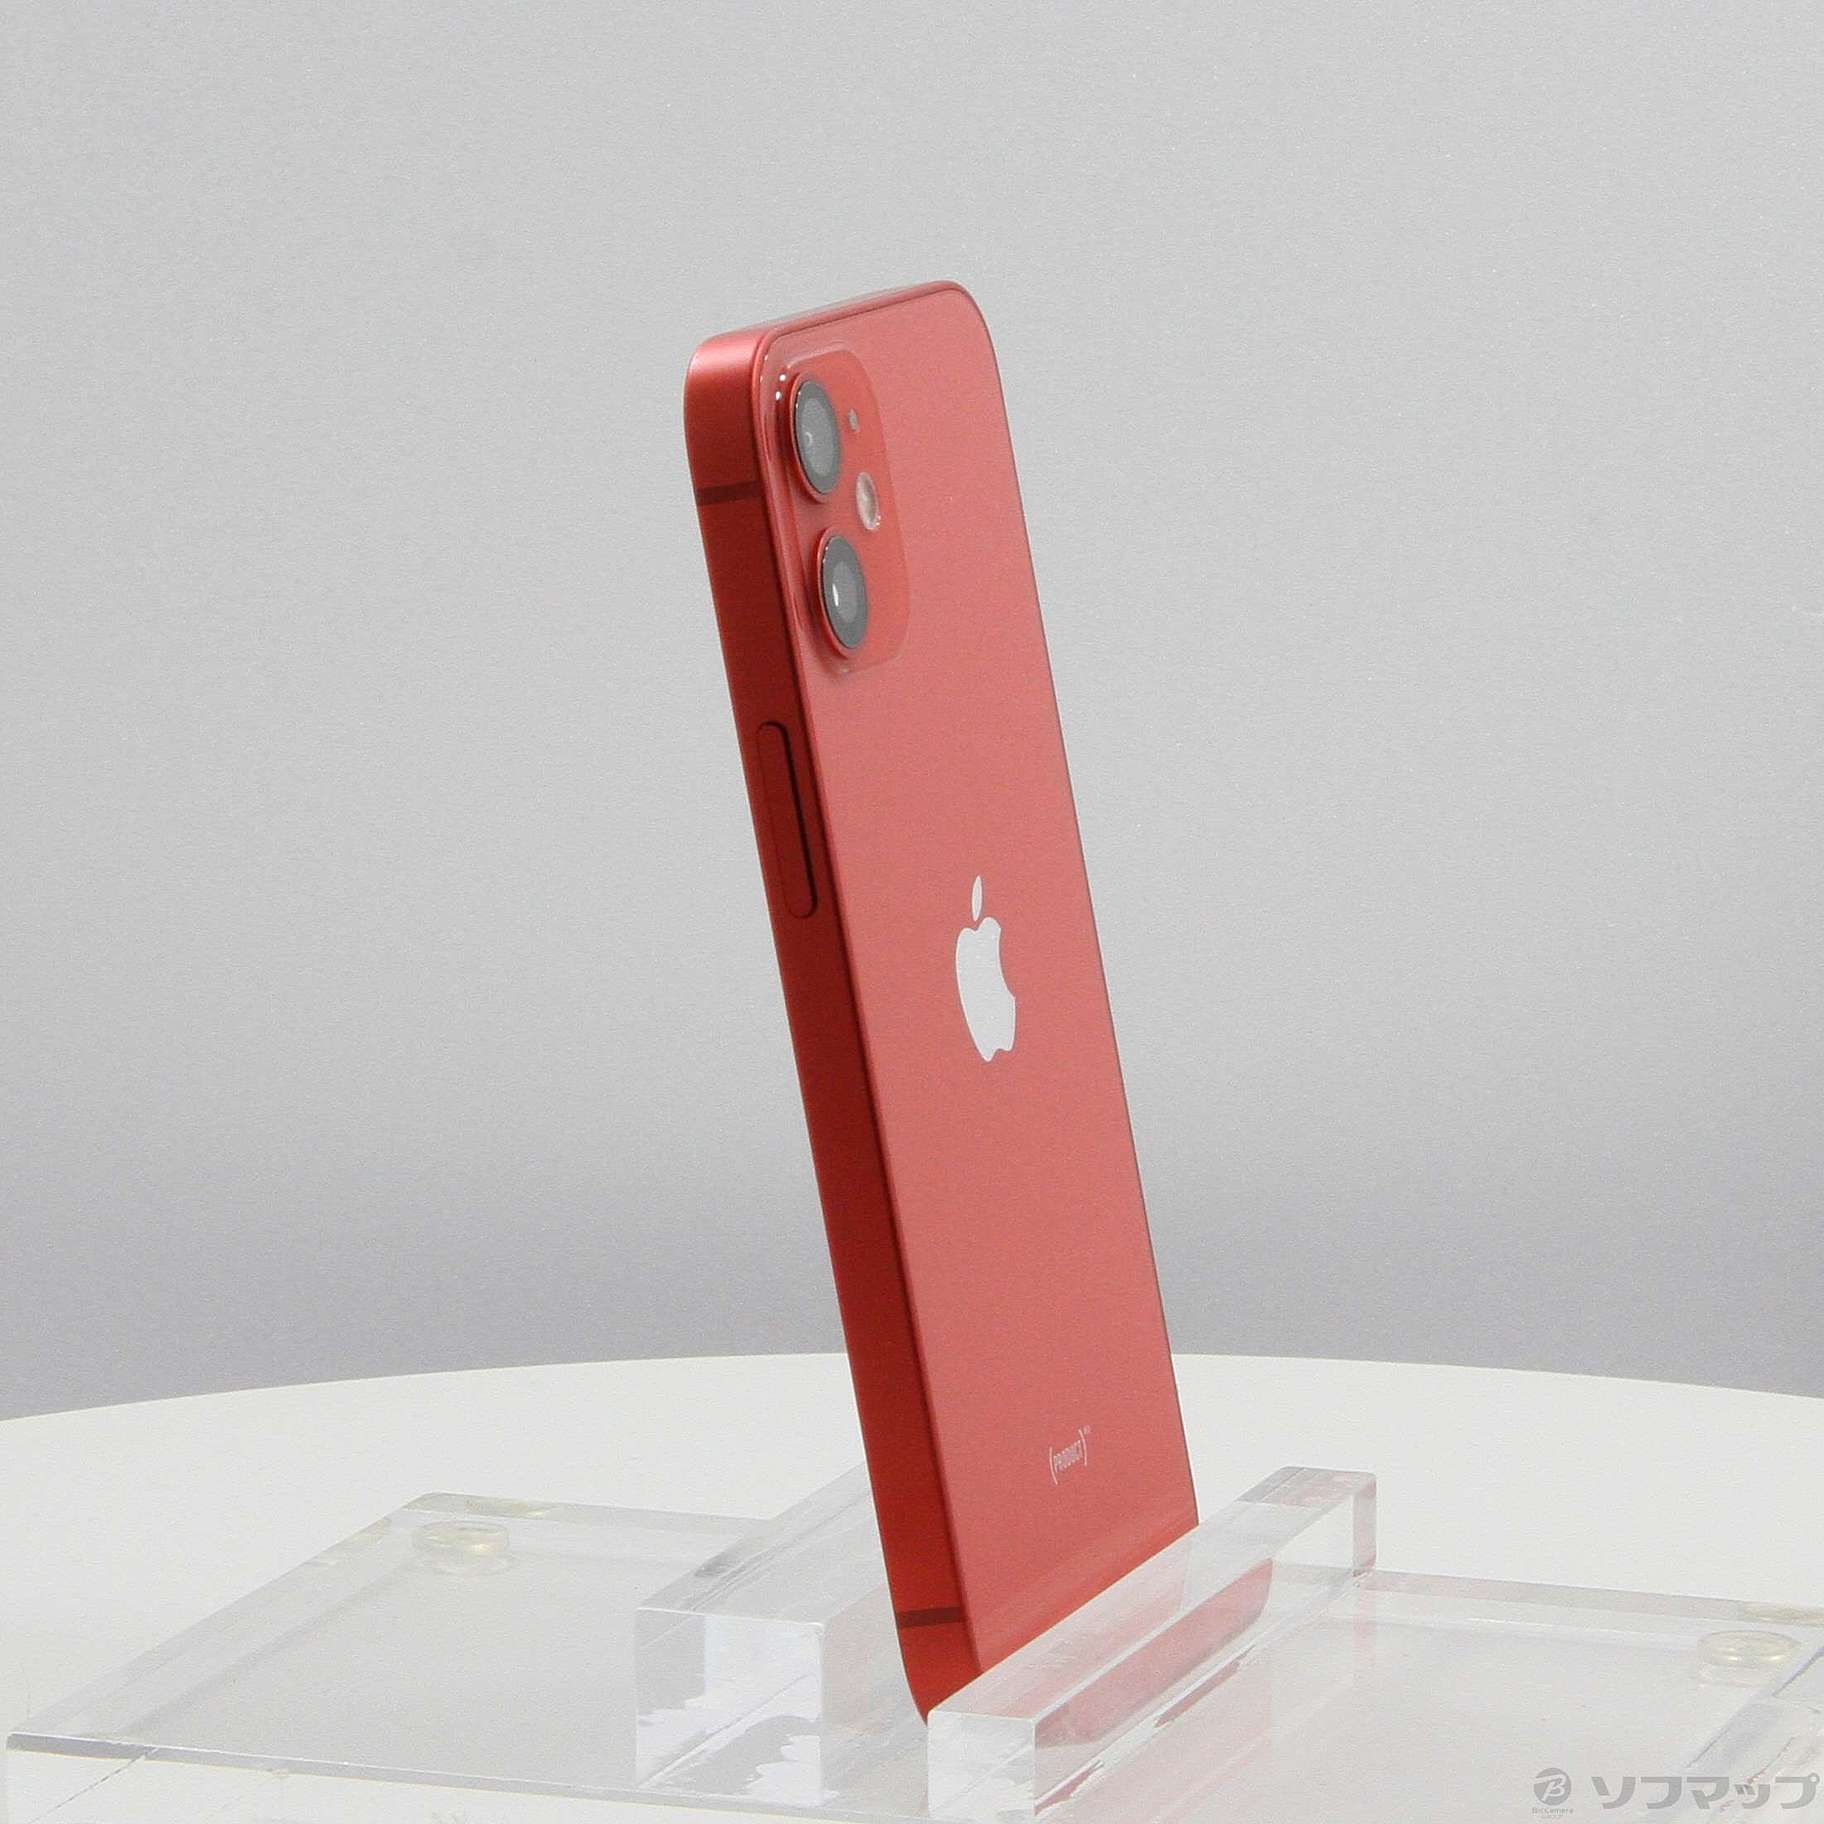 新品未開封 Apple iphone12 mini 64GB Red